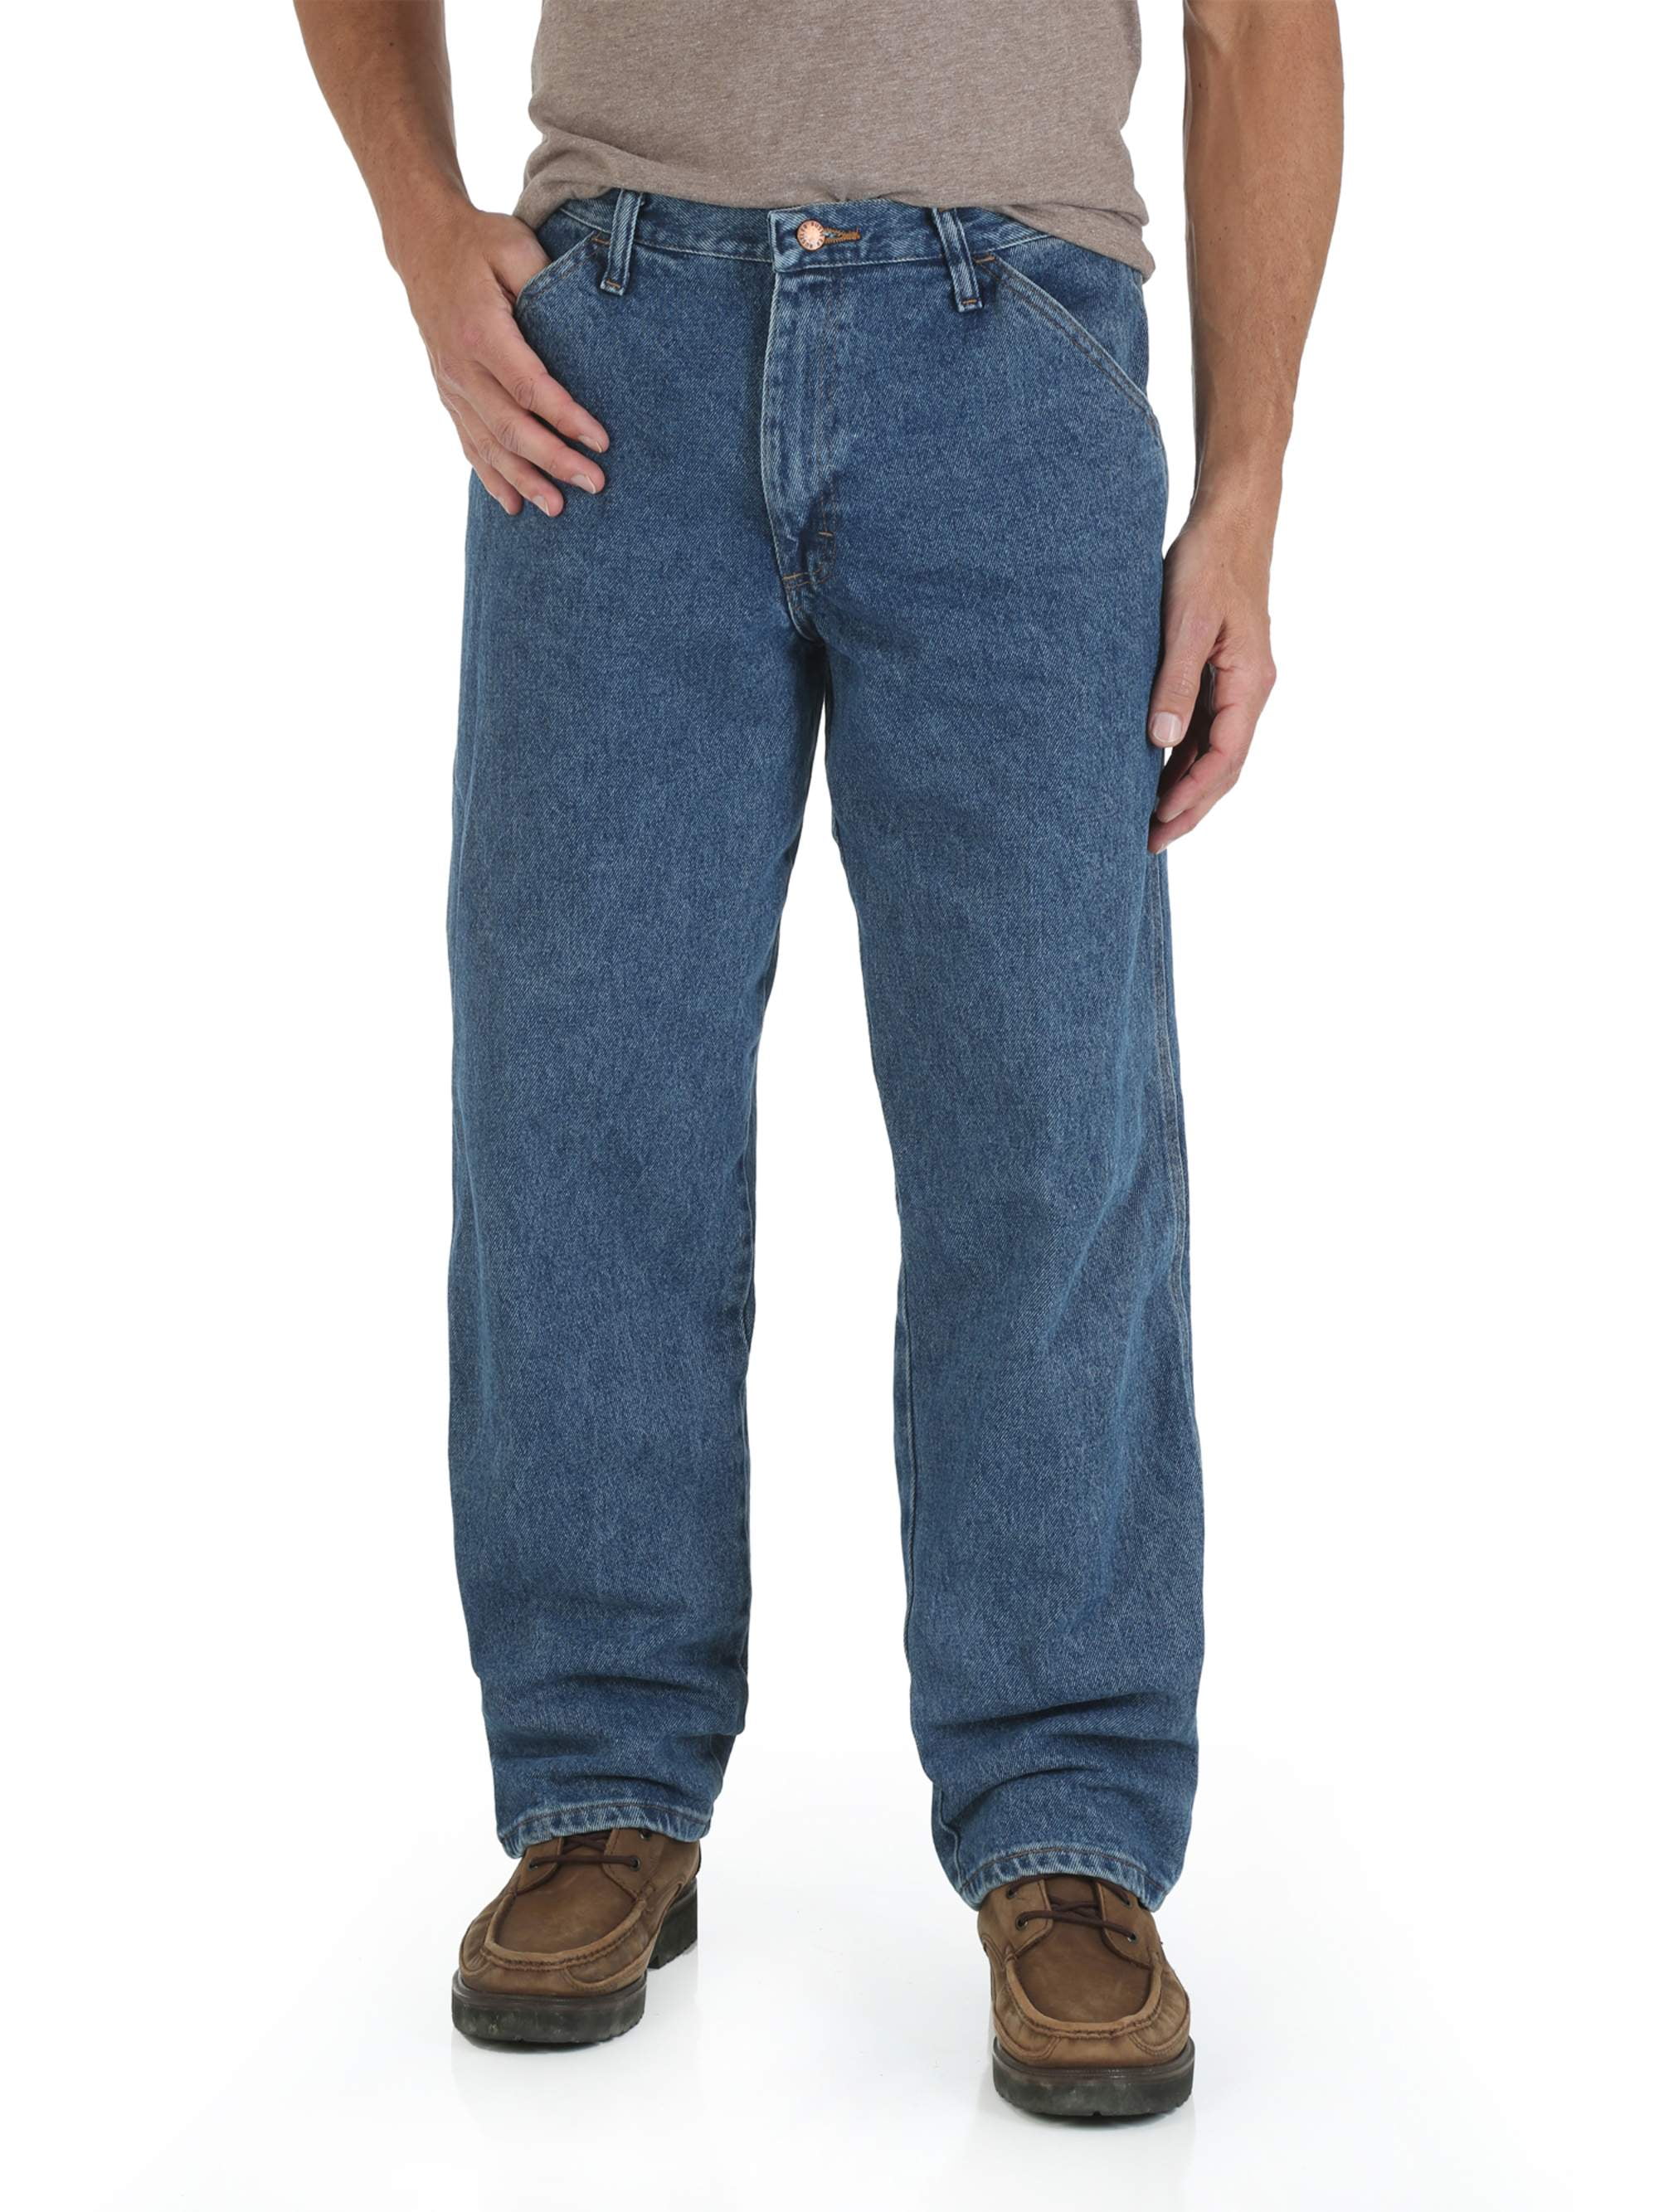 walmart jeans